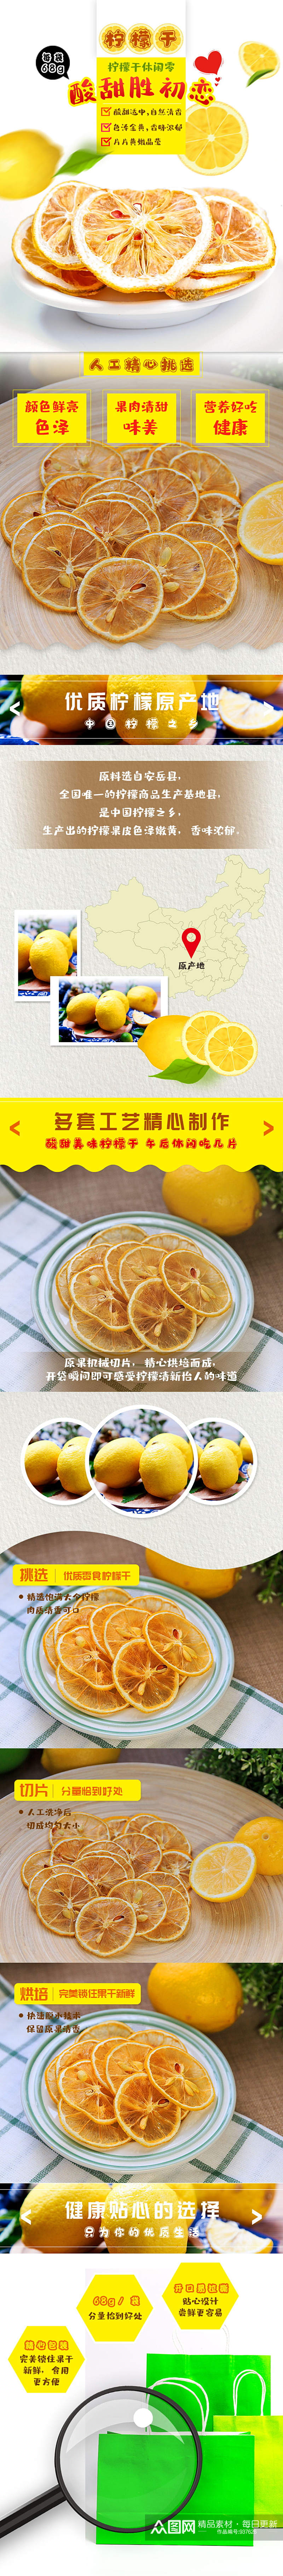 柠檬干水果食品简约风干净详情页模板素材